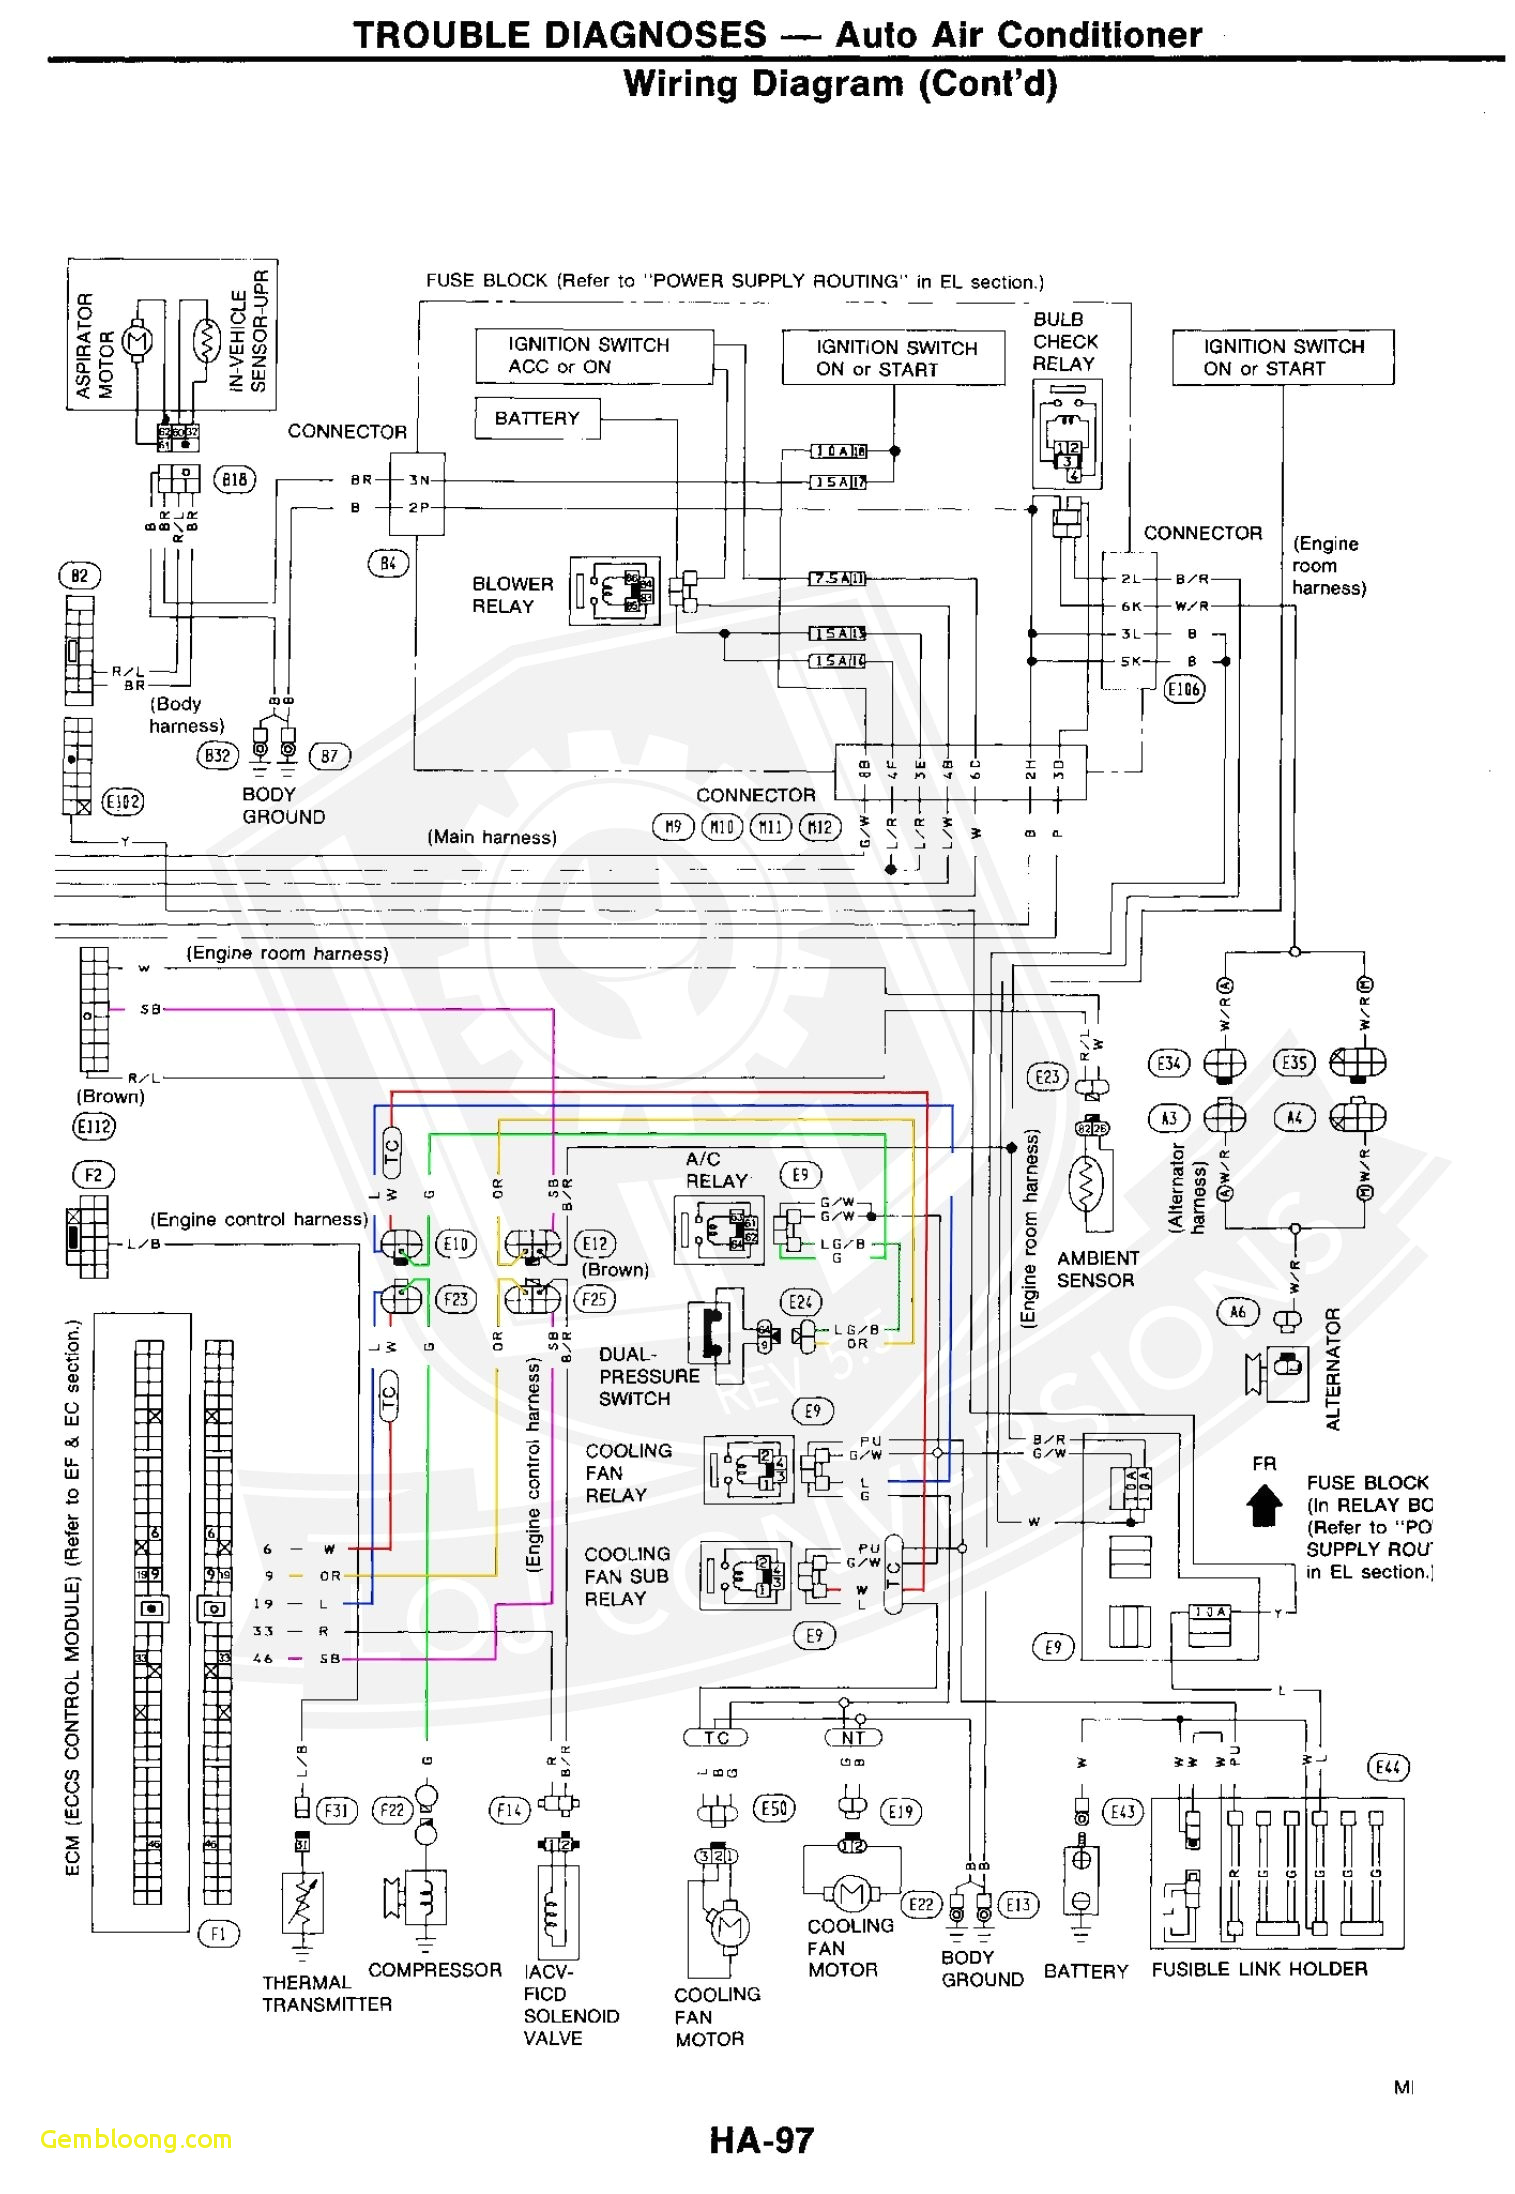 bmw wiring system diagram wiring diagram name bmw wiring diagram system x5 e53 bmw wiring diagram system